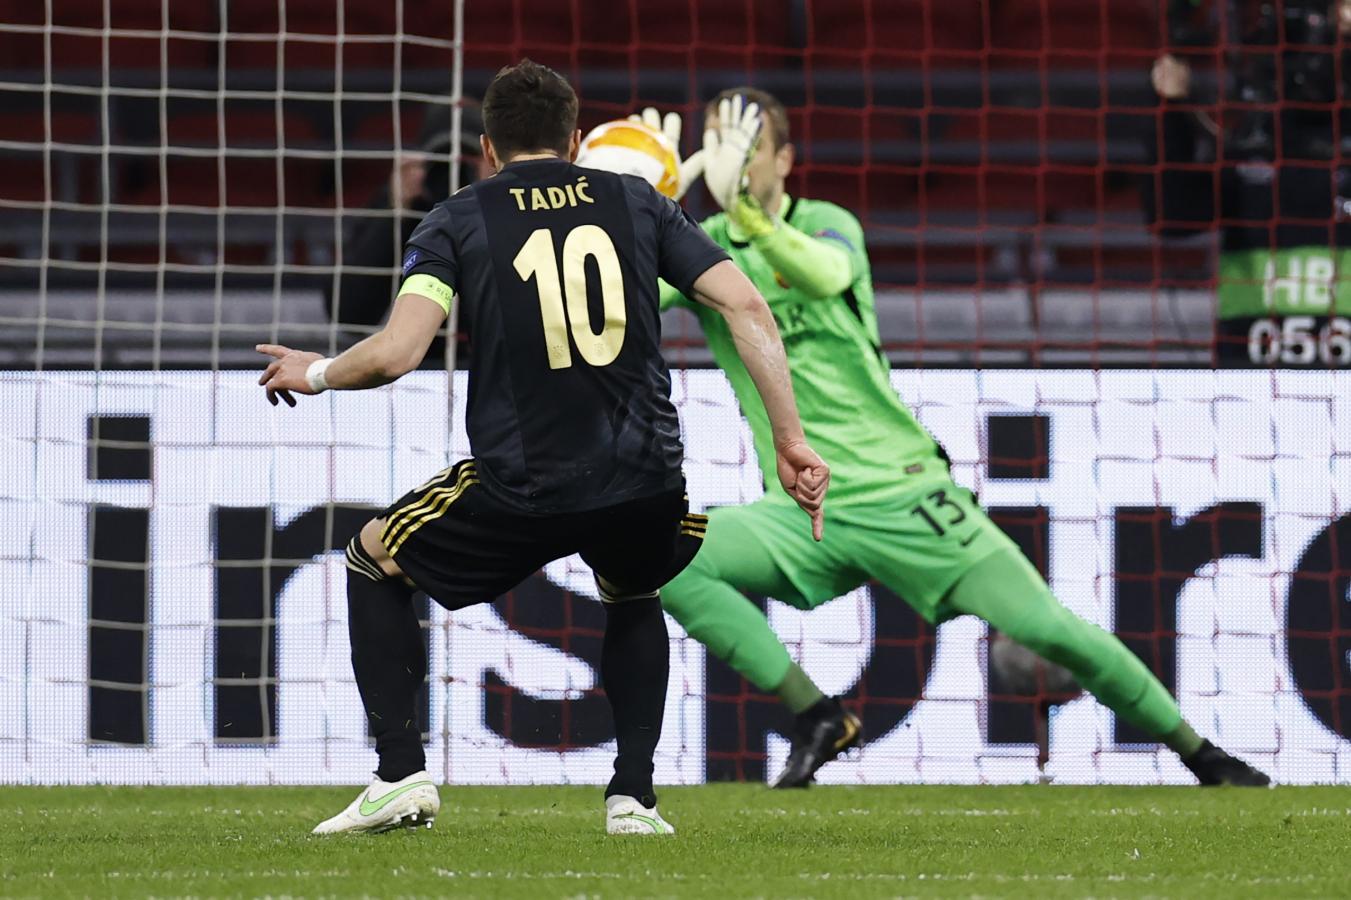 Imagen Tadic dispara el penal y Pau López lo contiene. Momento clave del partido para ambos equipos.